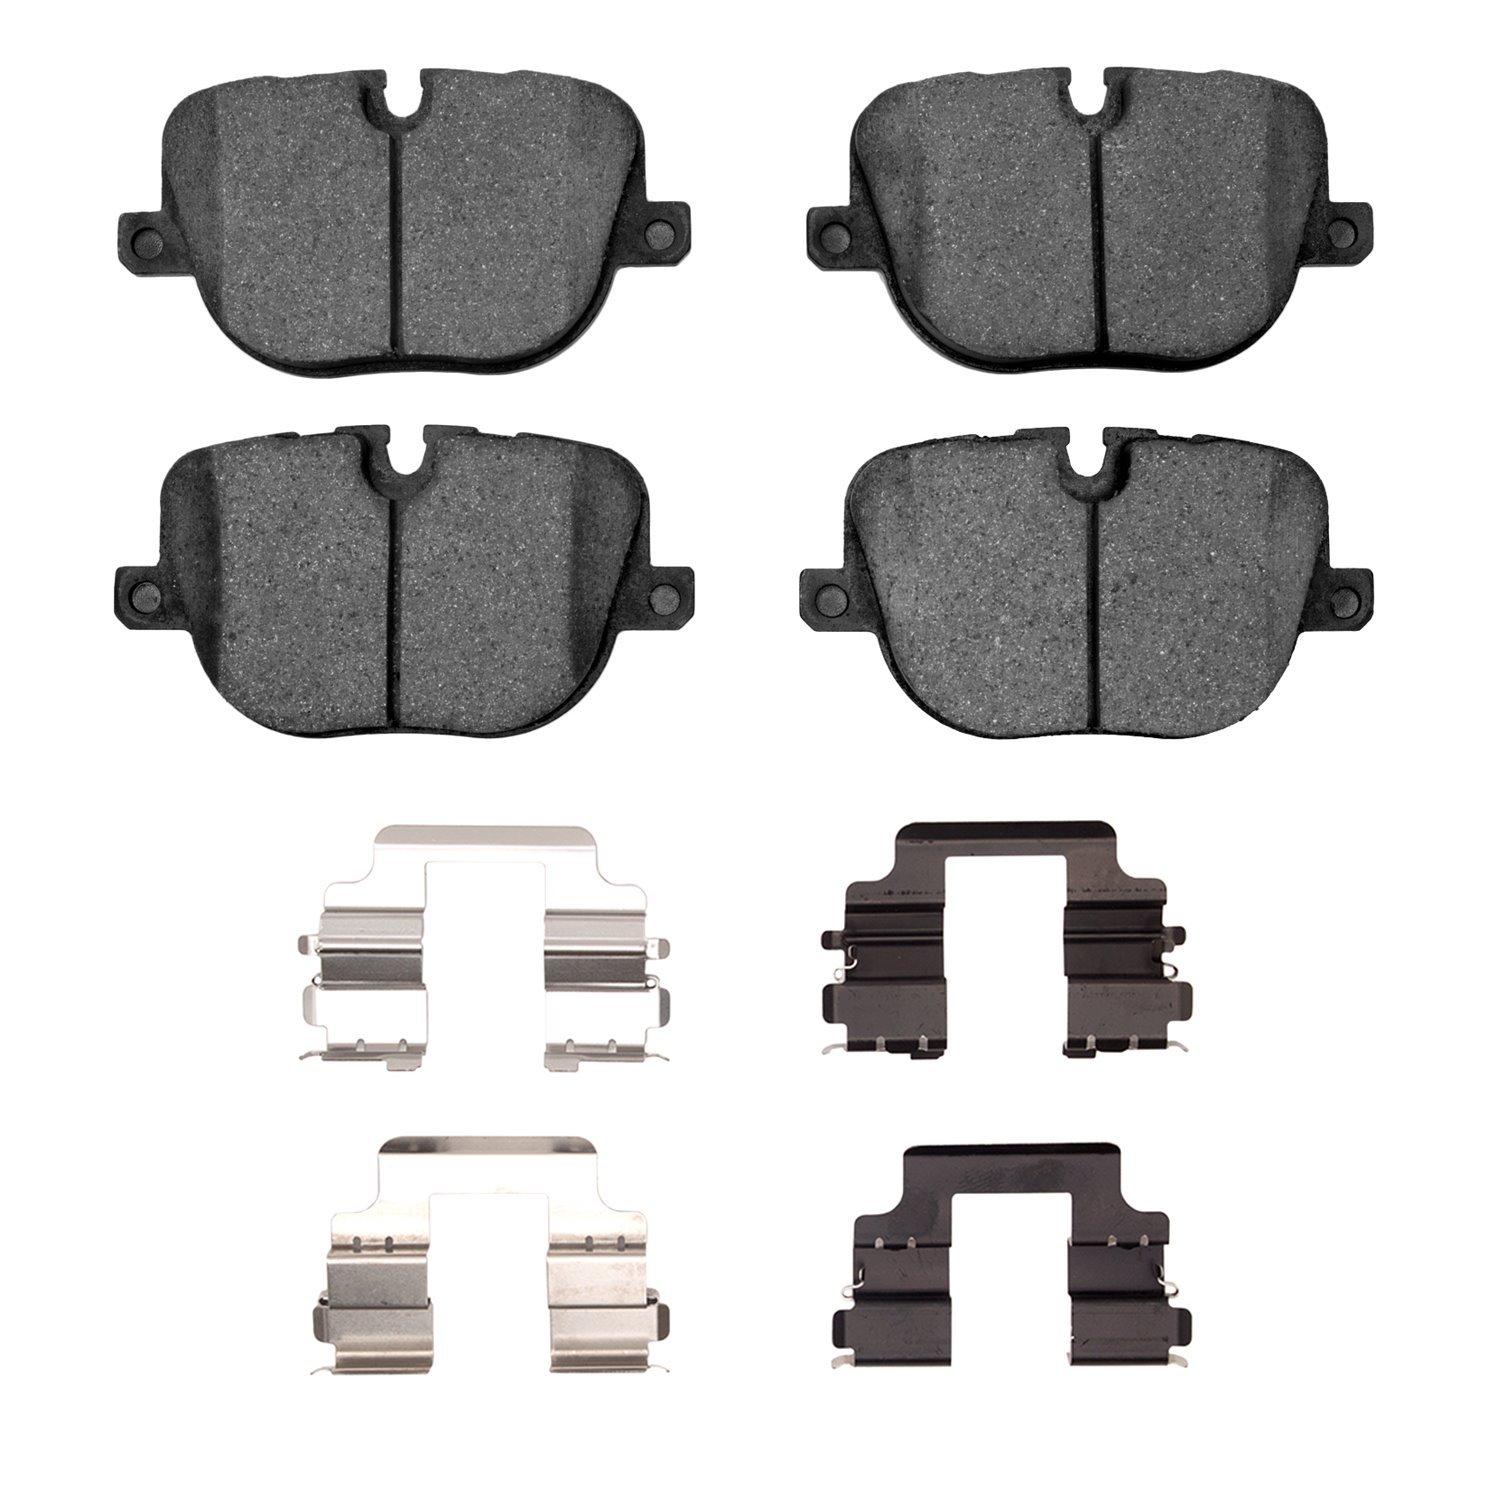 1600-1427-01 5000 Euro Ceramic Brake Pads & Hardware Kit, 2010-2013 Land Rover, Position: Rear